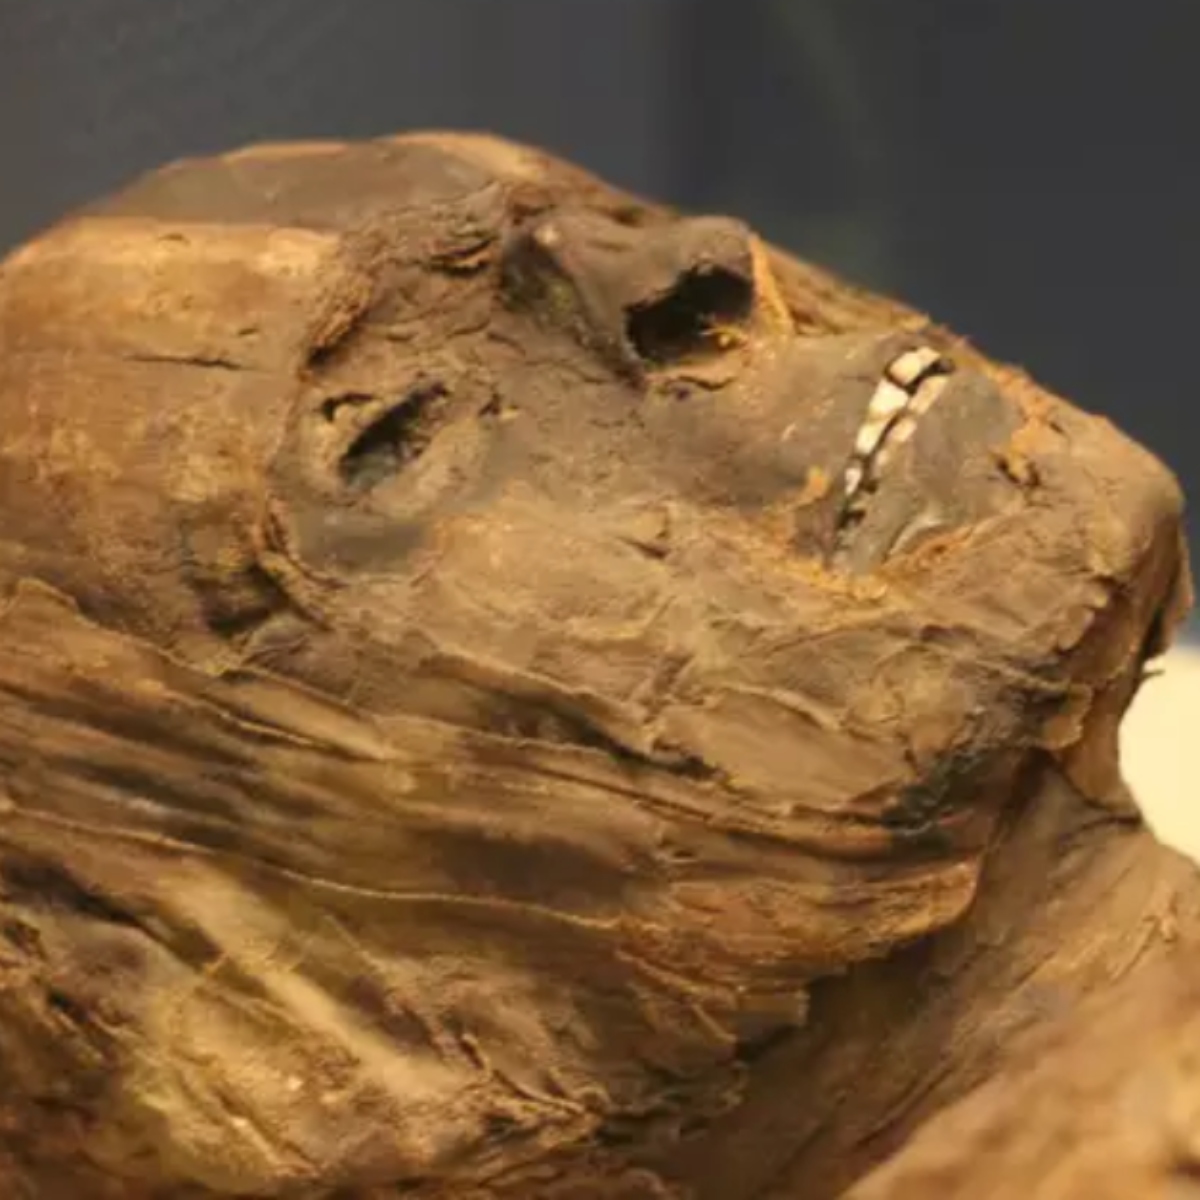  homem que estava desaparecido há 16 dias foi encontrado em estado de mumificação 